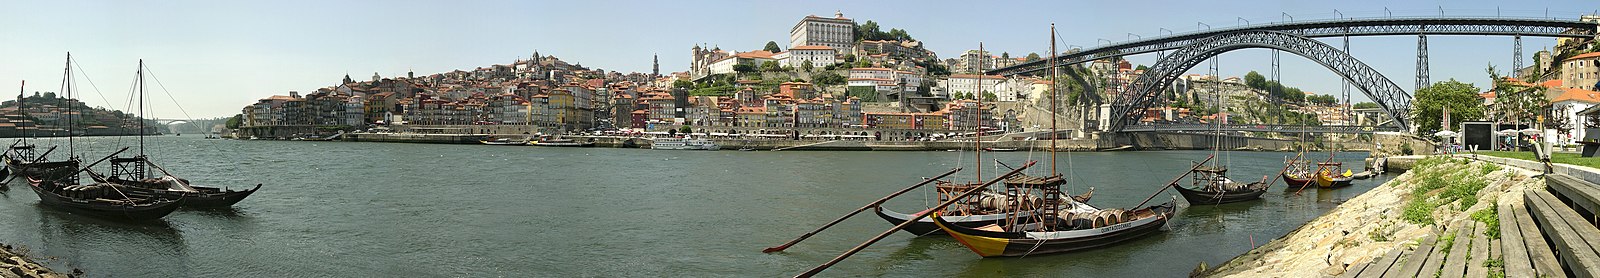 Historical part of Porto, seen from Vila Nova de Gaia, through the Douro river